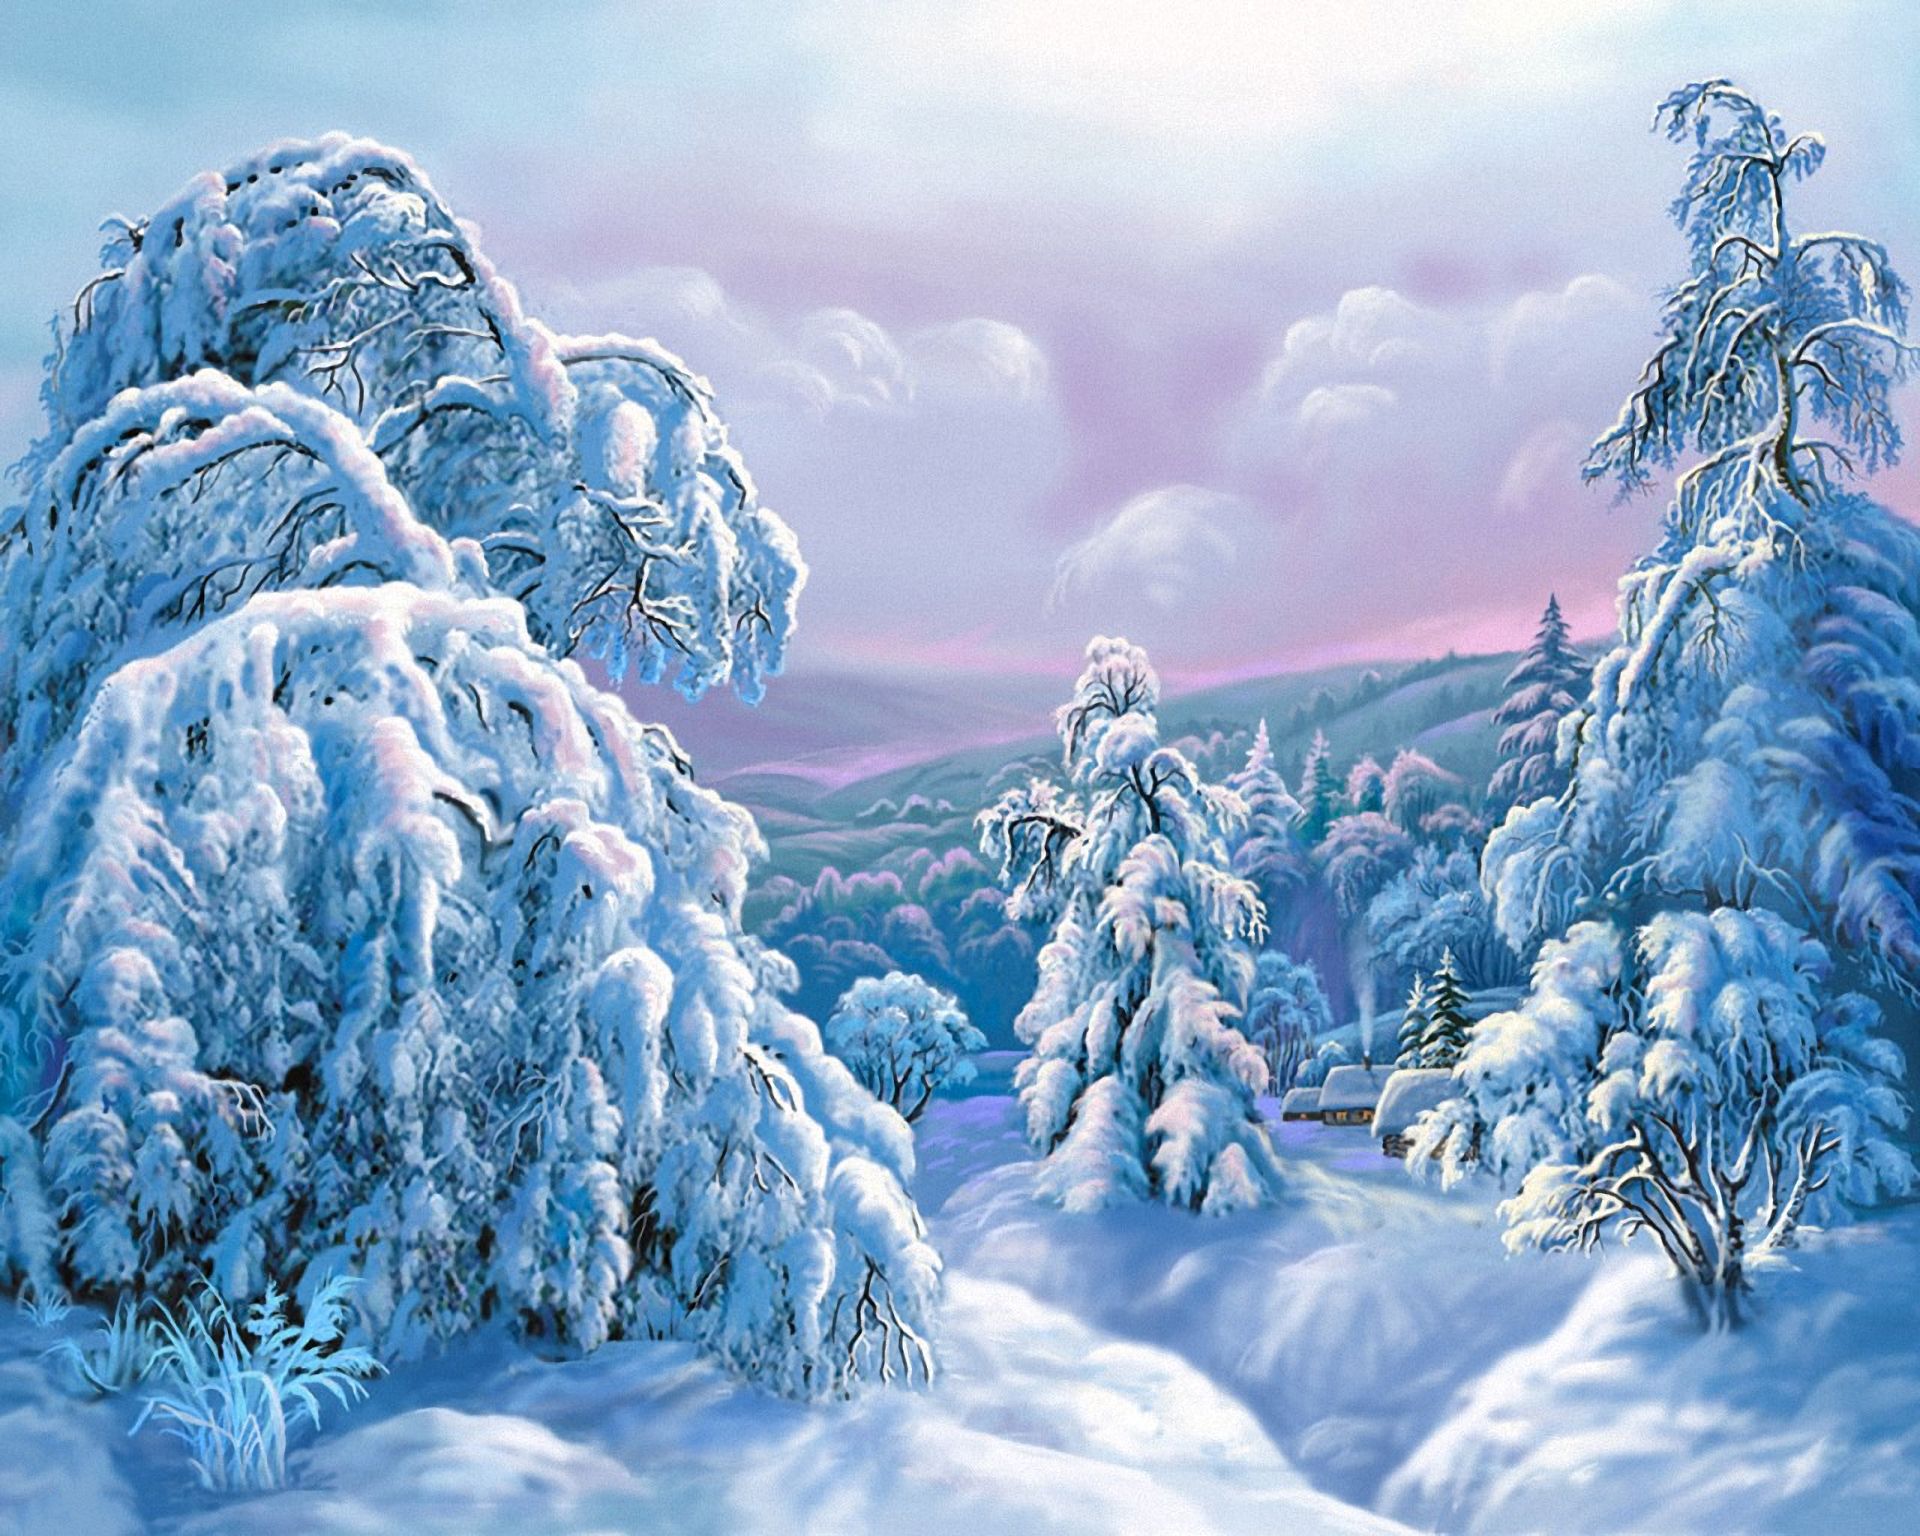 Скачать обои бесплатно Зима, Снег, Дерево, Картина, Ландшафт, Художественные картинка на рабочий стол ПК